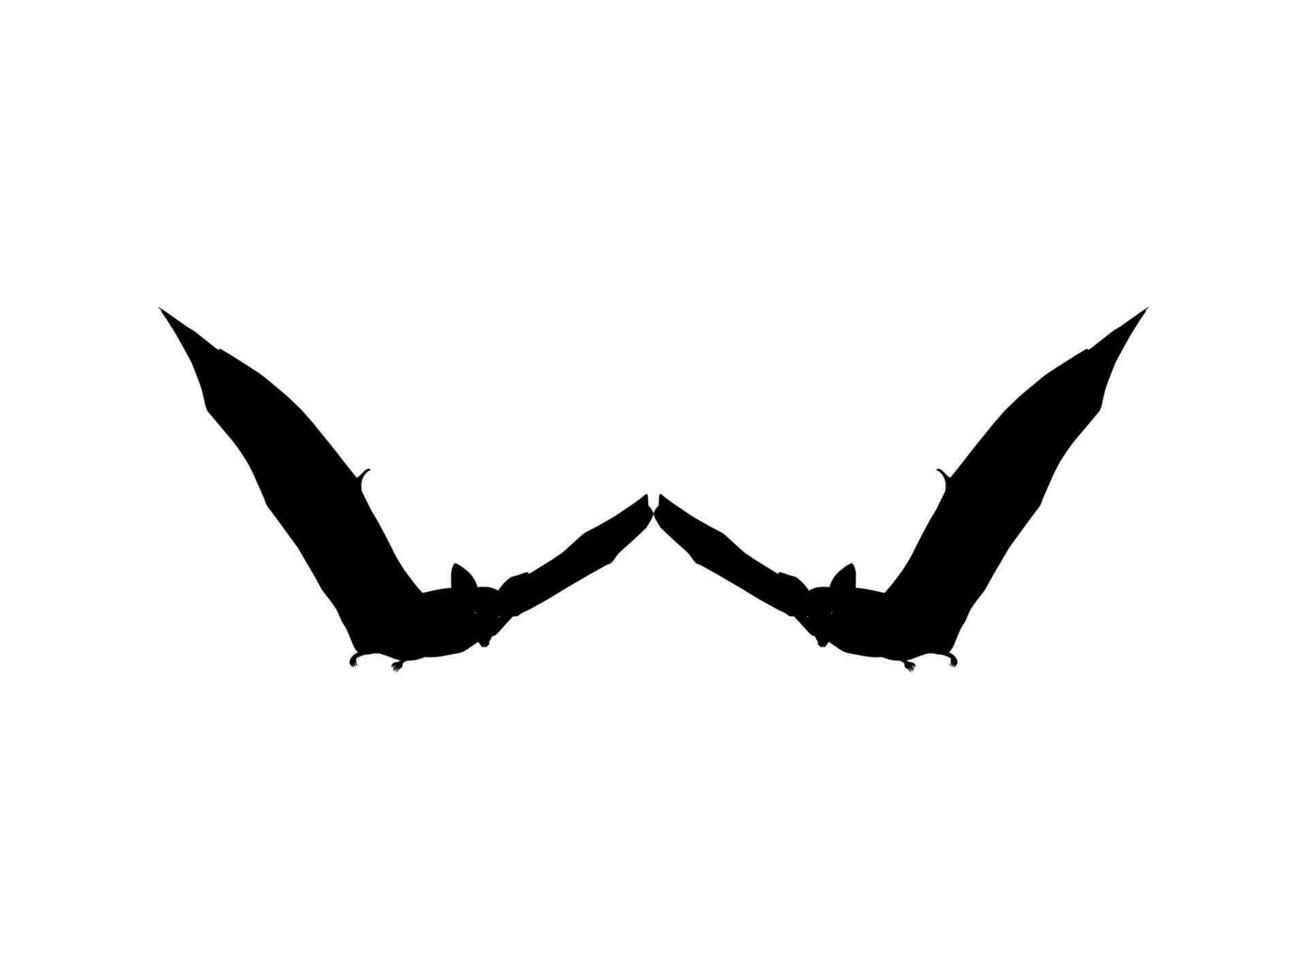 Silhouette des Paars Flughund oder Fledermaus für Kunstillustration, Ikone, Symbol, Piktogramm, Logo, Website oder Grafikdesignelement. Vektor-Illustration vektor